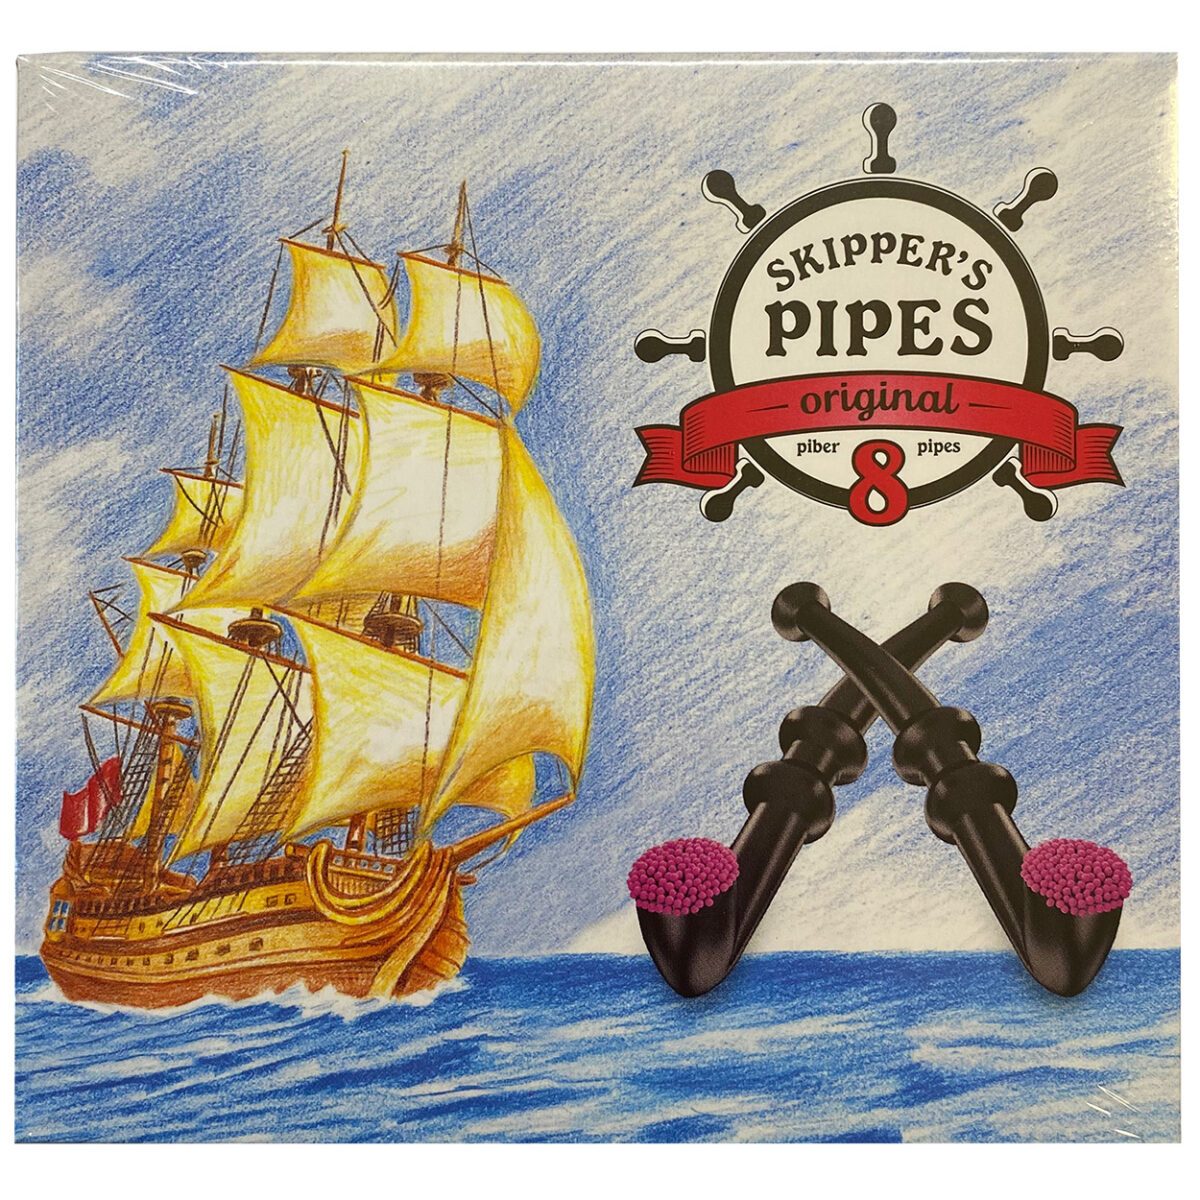 Malaco Skipper's Pipes Original 8er (136g) 1